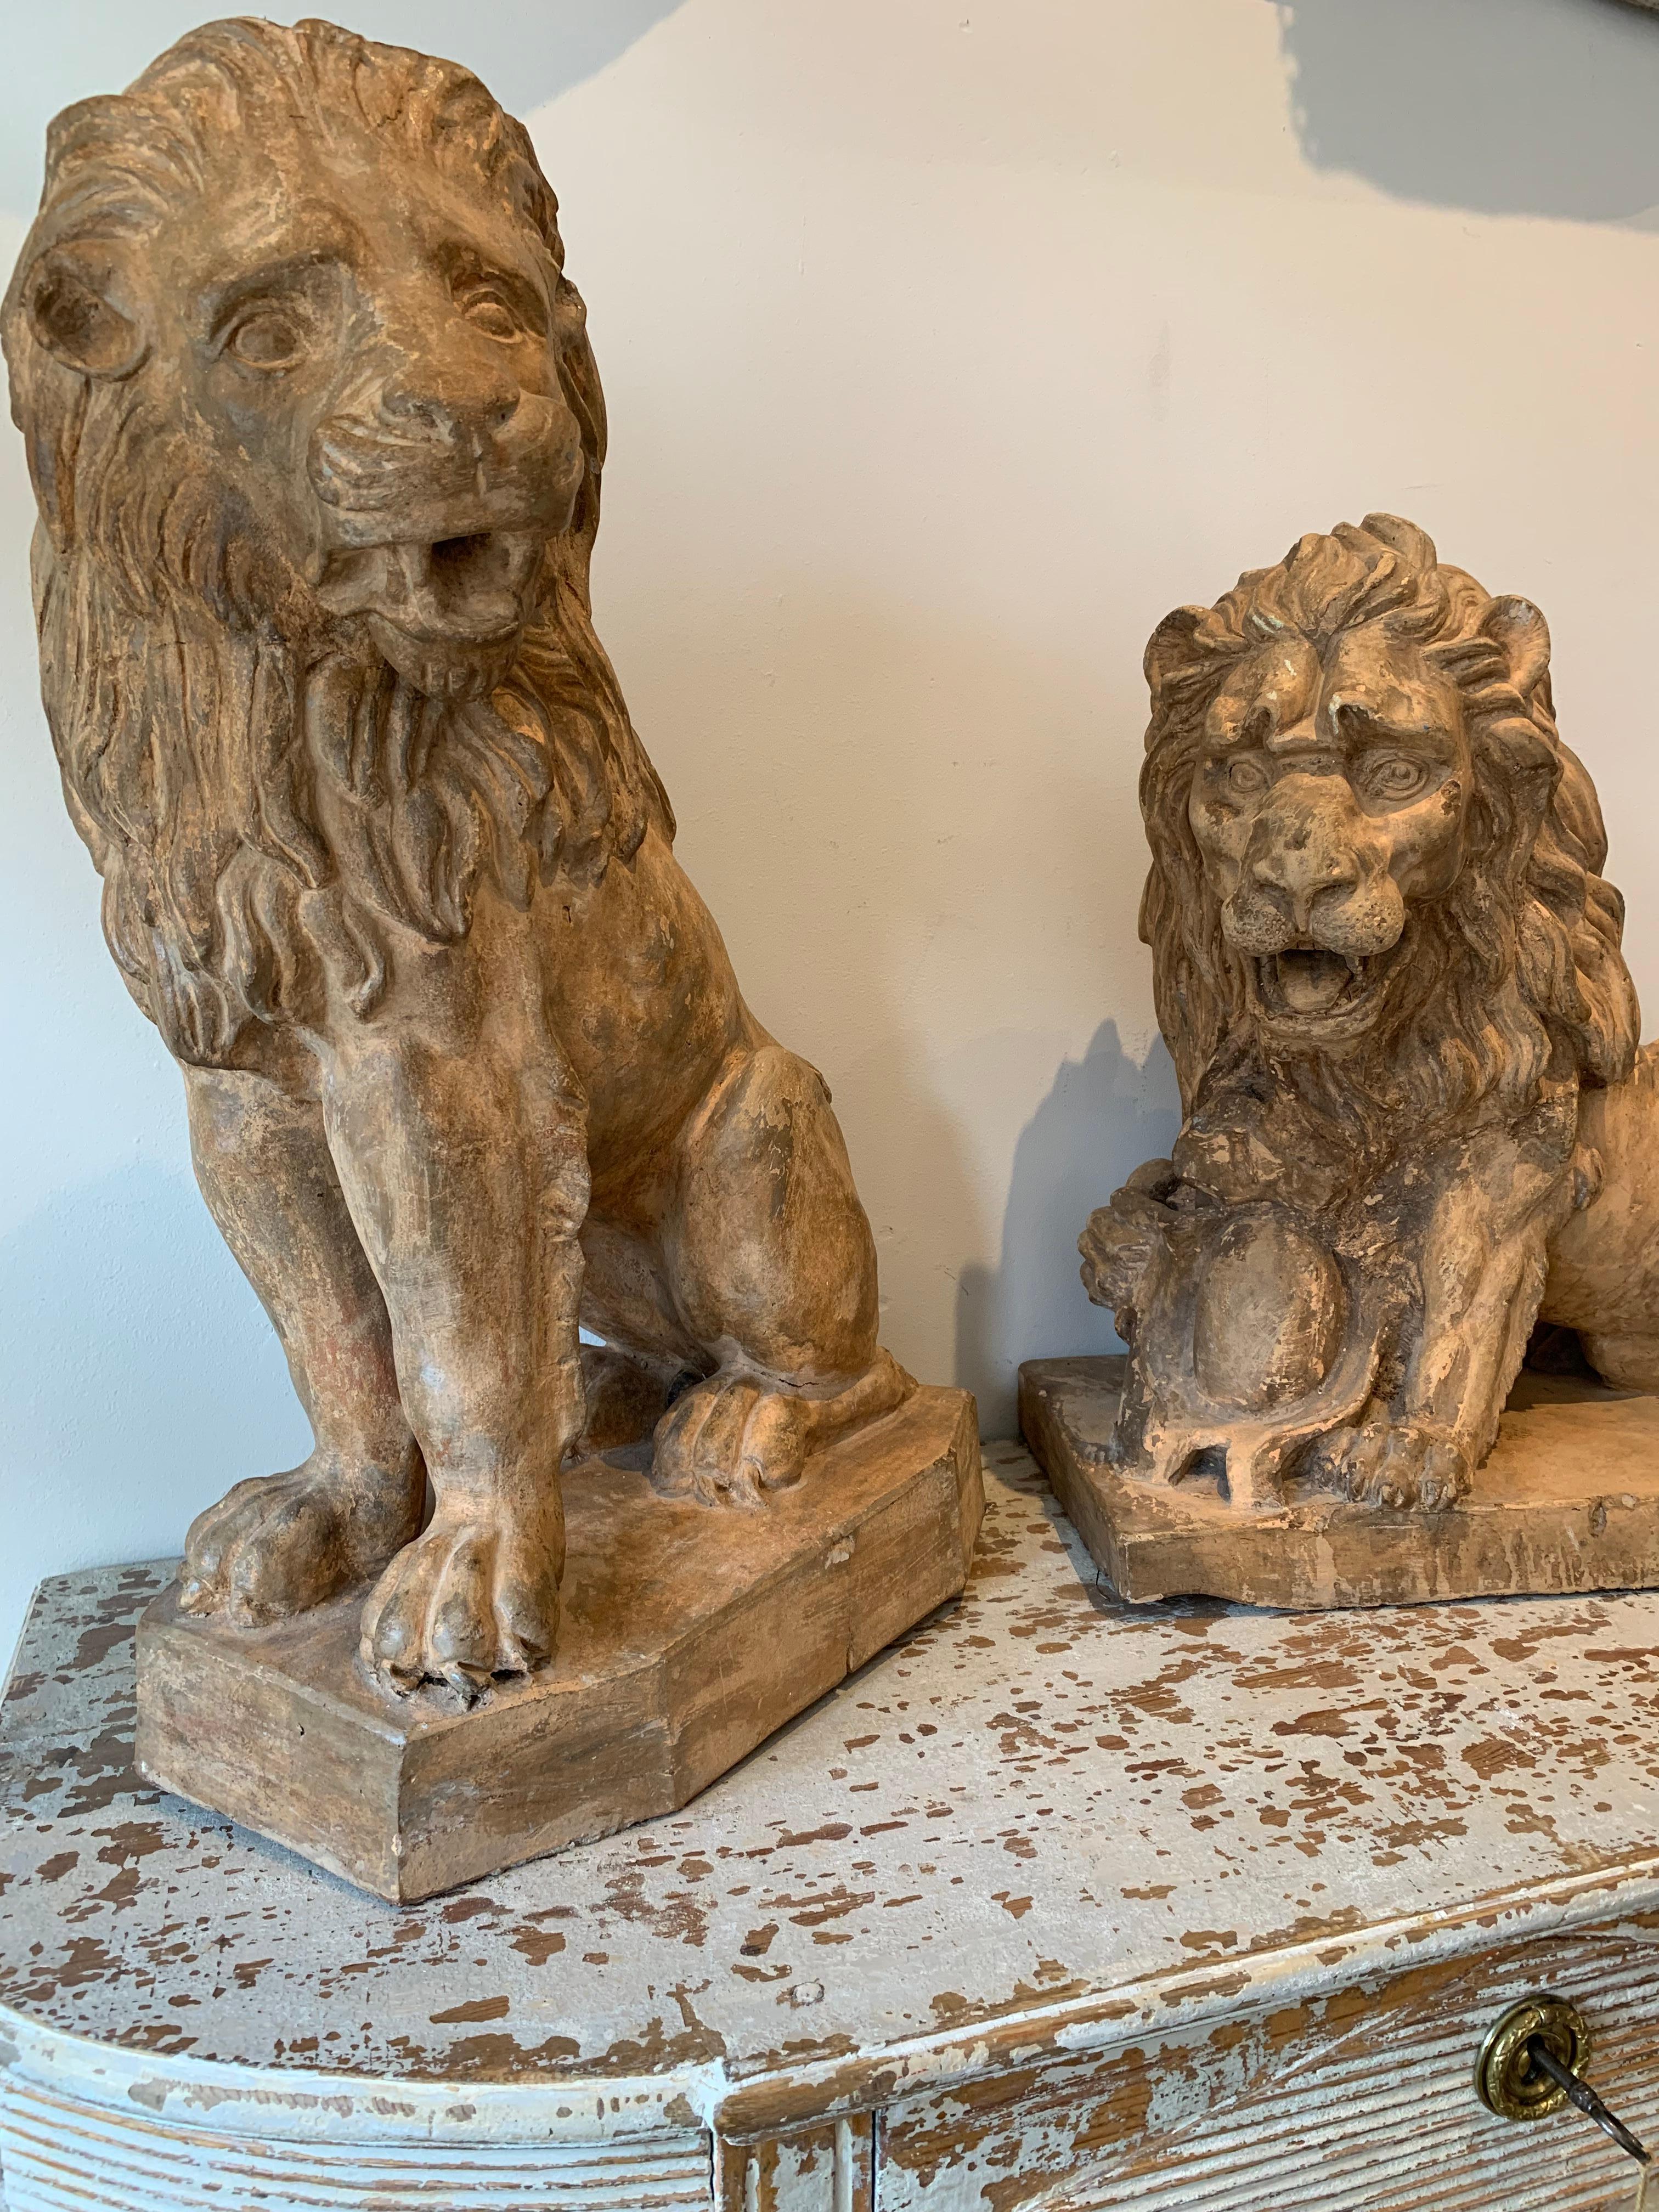 Fabuleuse paire de lions français du début du XIXe siècle en terre cuite couleur miel.
Tous deux sont stylisés et ressemblent à la vie, avec des crinières, l'un avec une queue enroulée, assis à la verticale, l'autre légèrement couché, la patte posée